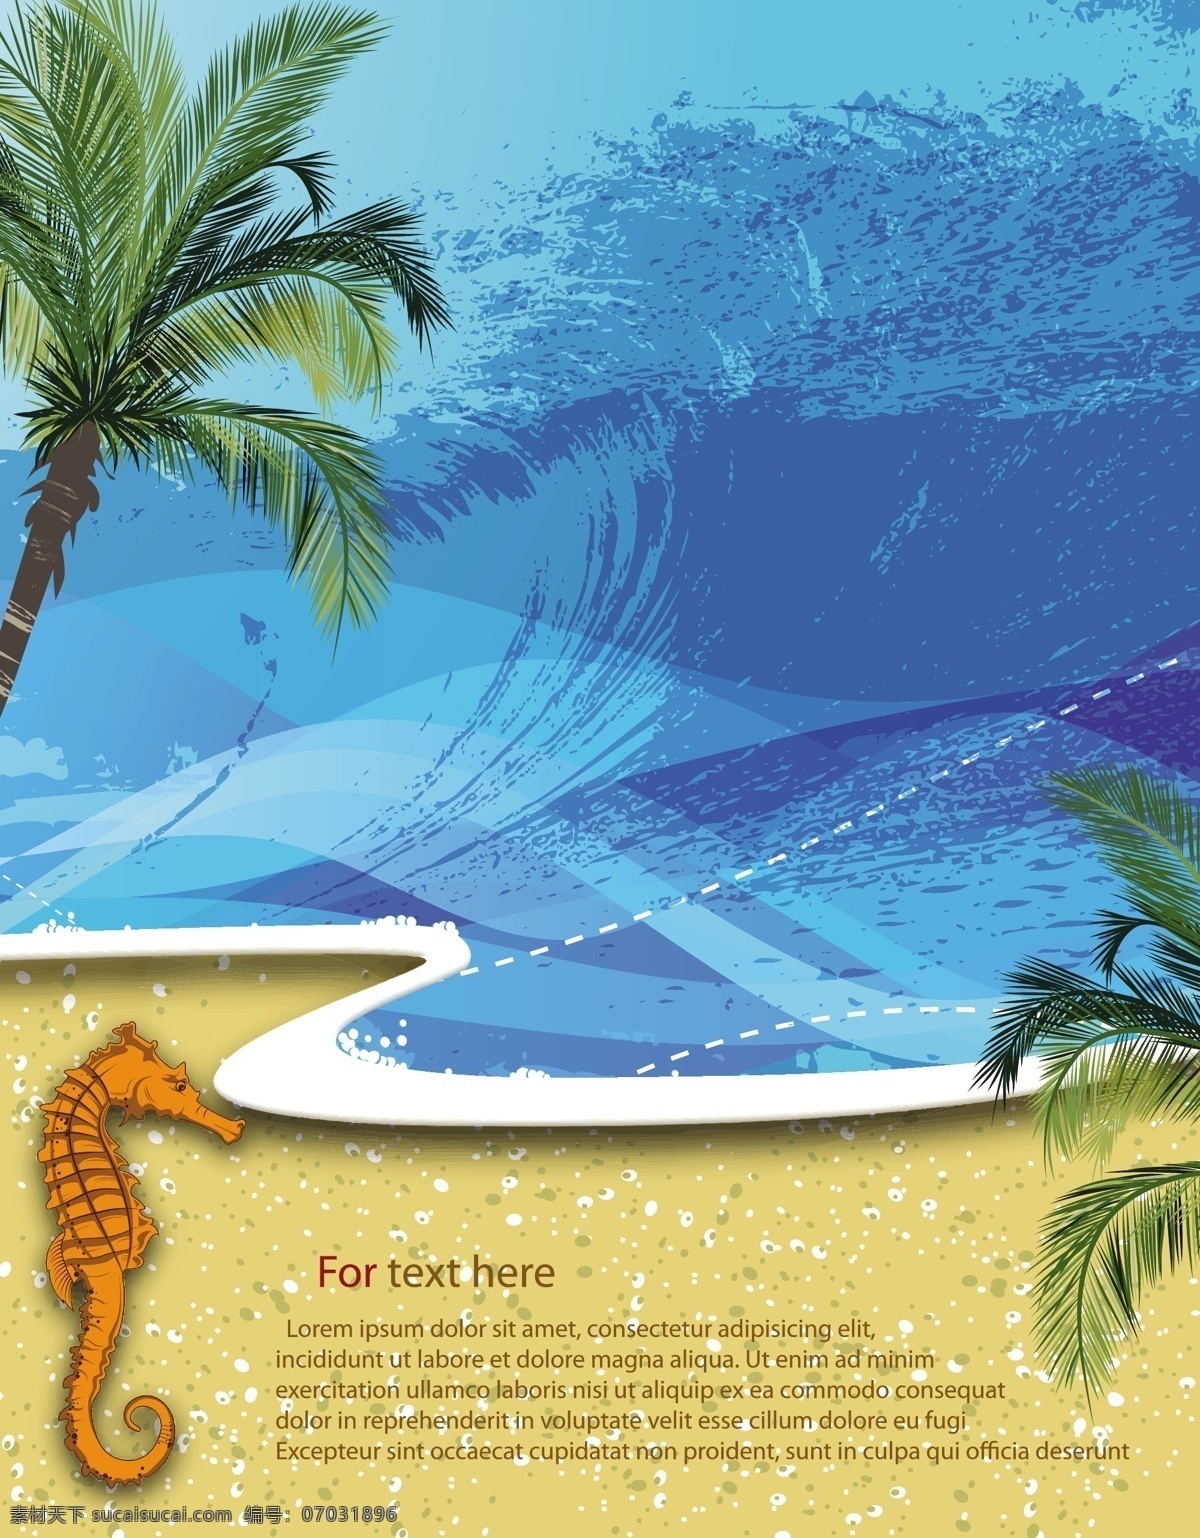 卡通 椰树 插画 矢量 模板下载 夏日海滩风景 沙滩背景 海马 椰树插画 夏日主题插画 底纹边框 矢量素材 青色 天蓝色